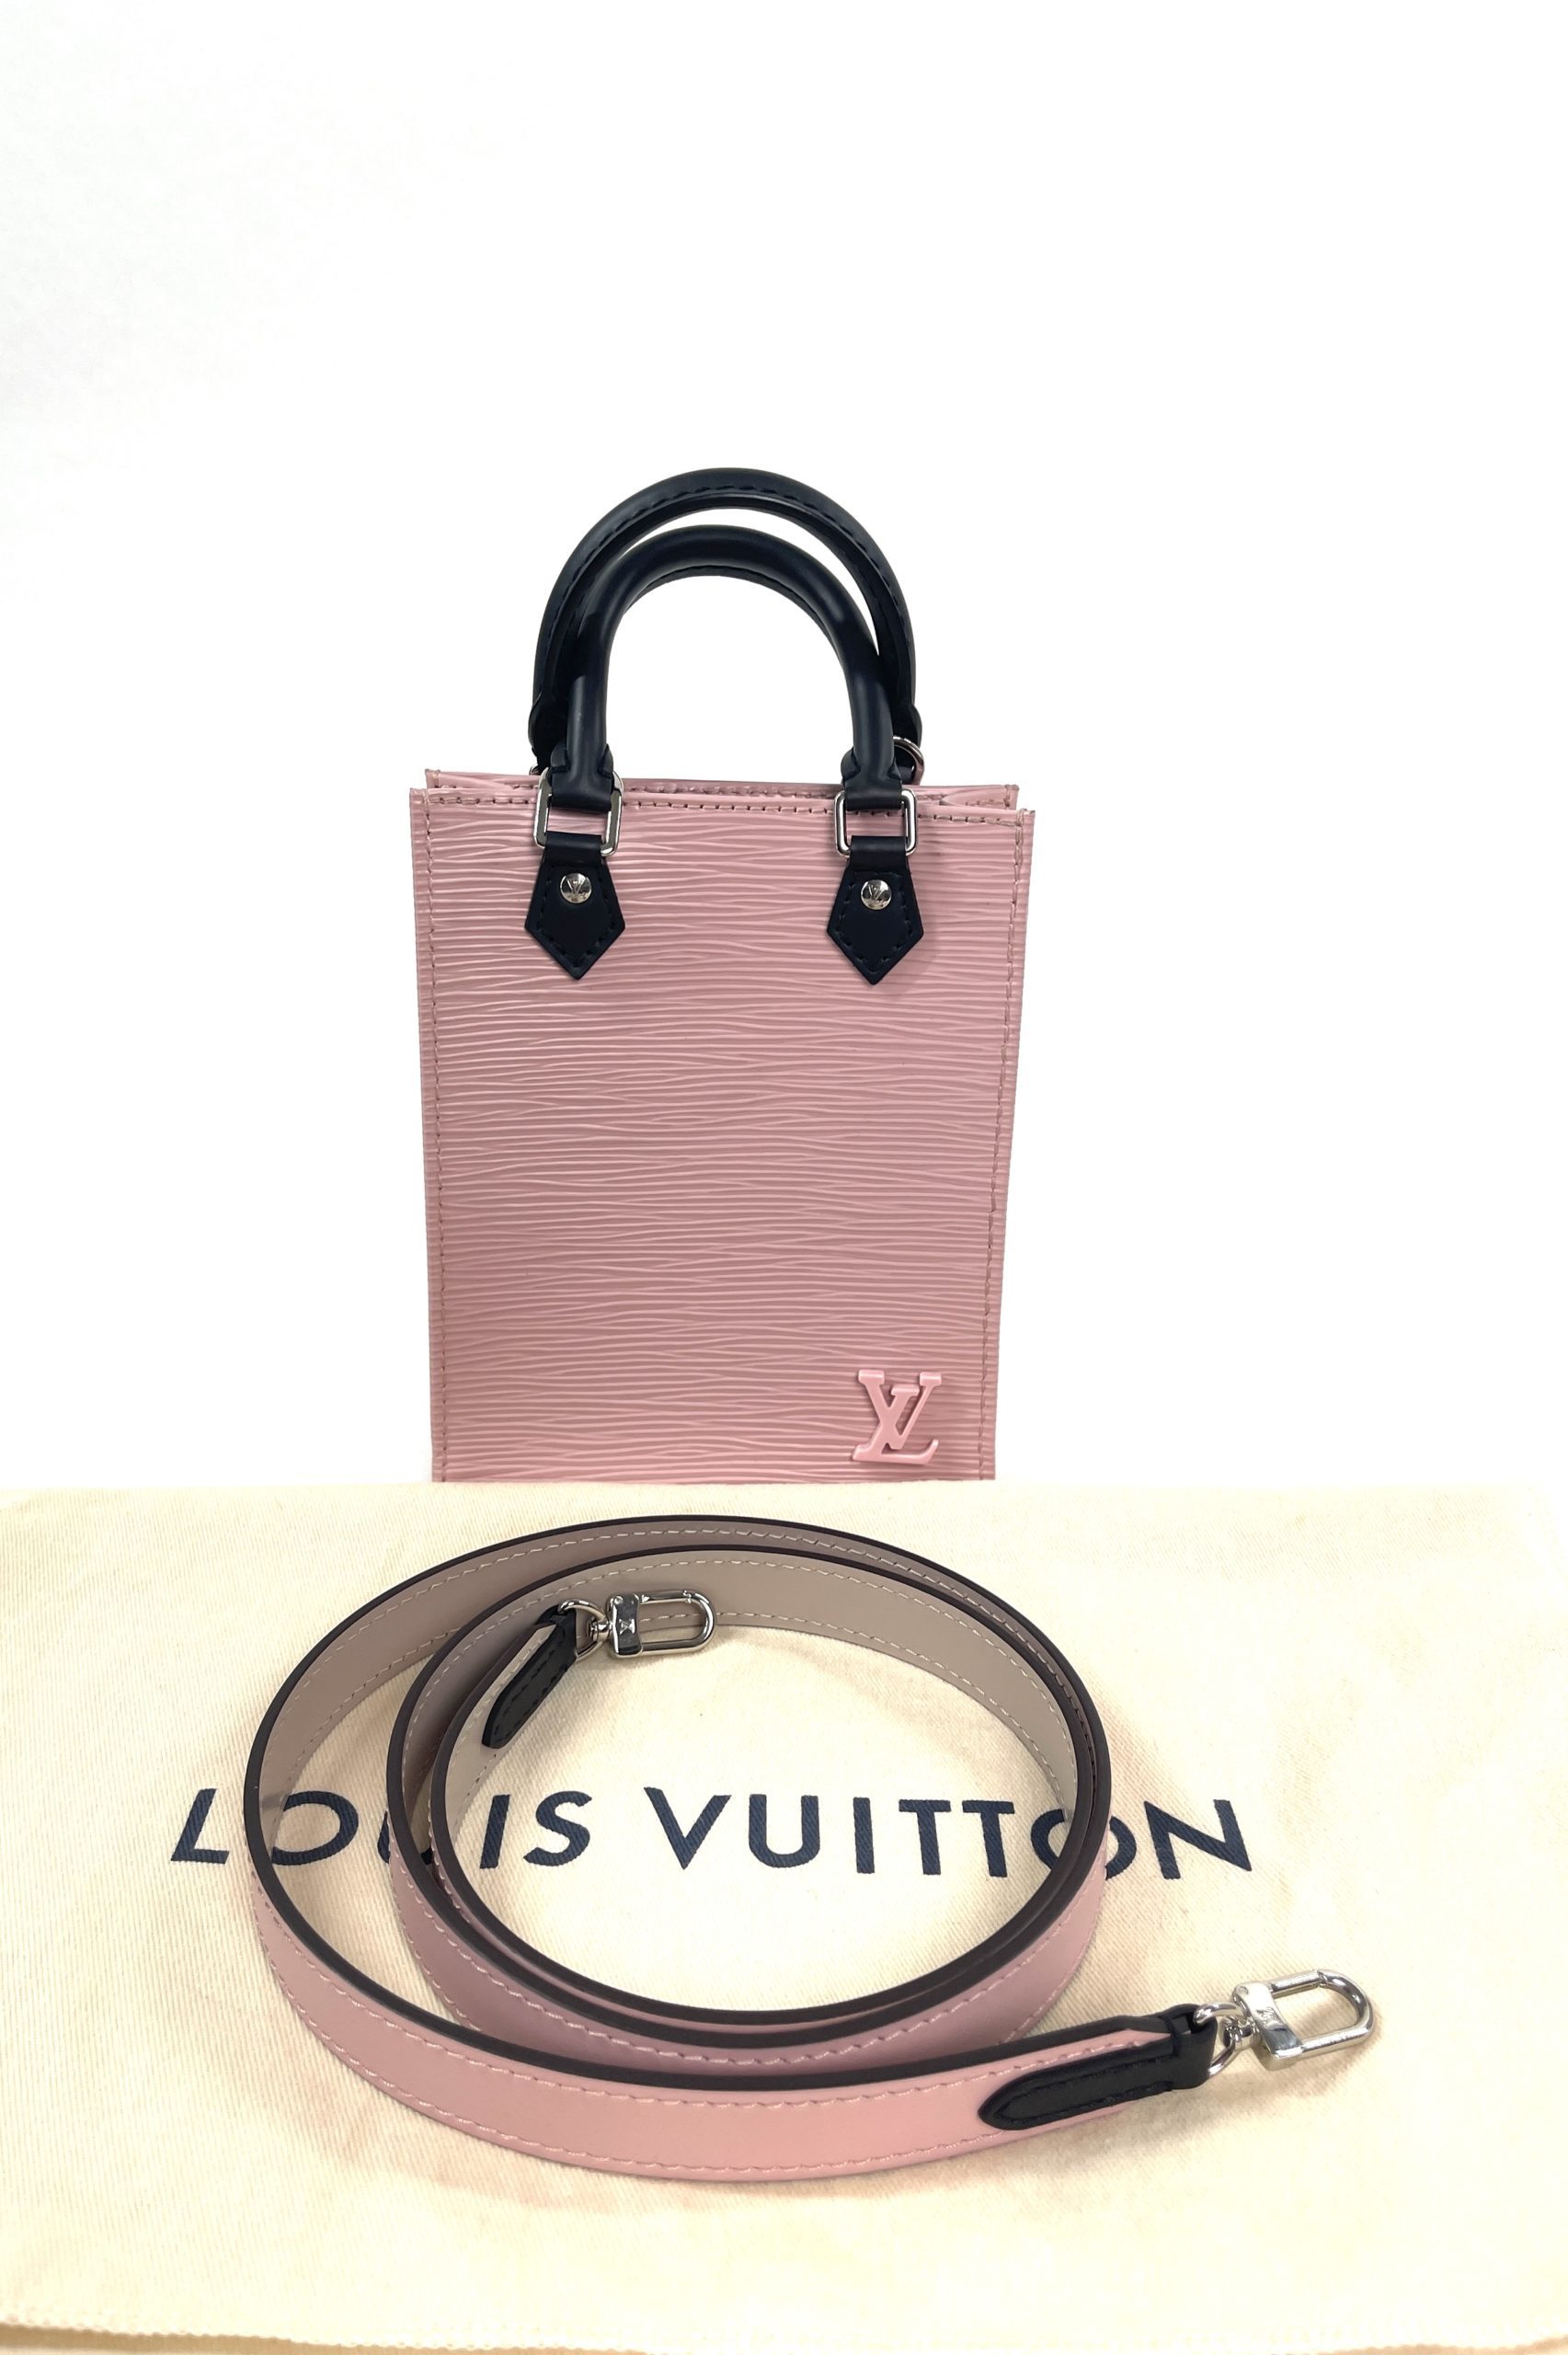 Louis Vuitton Sac Plat  Vuitton, Louis vuitton, Louis vuitton